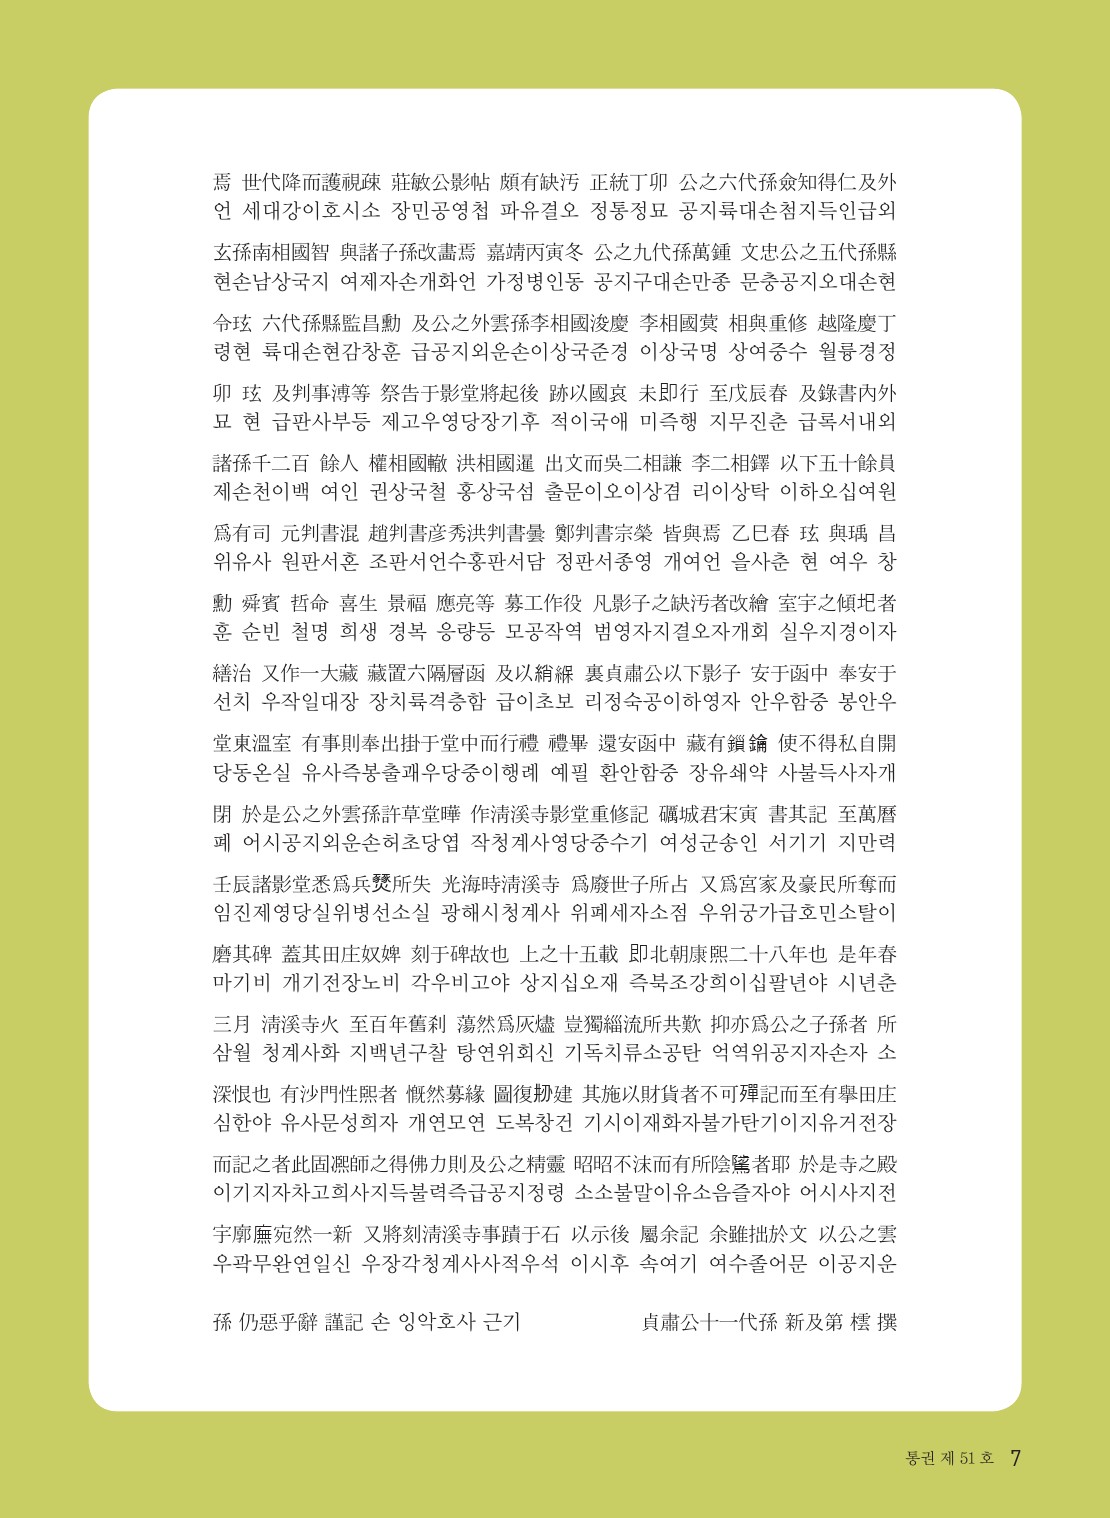 201013 평양조씨종보(51호)-수정-5-7.jpg